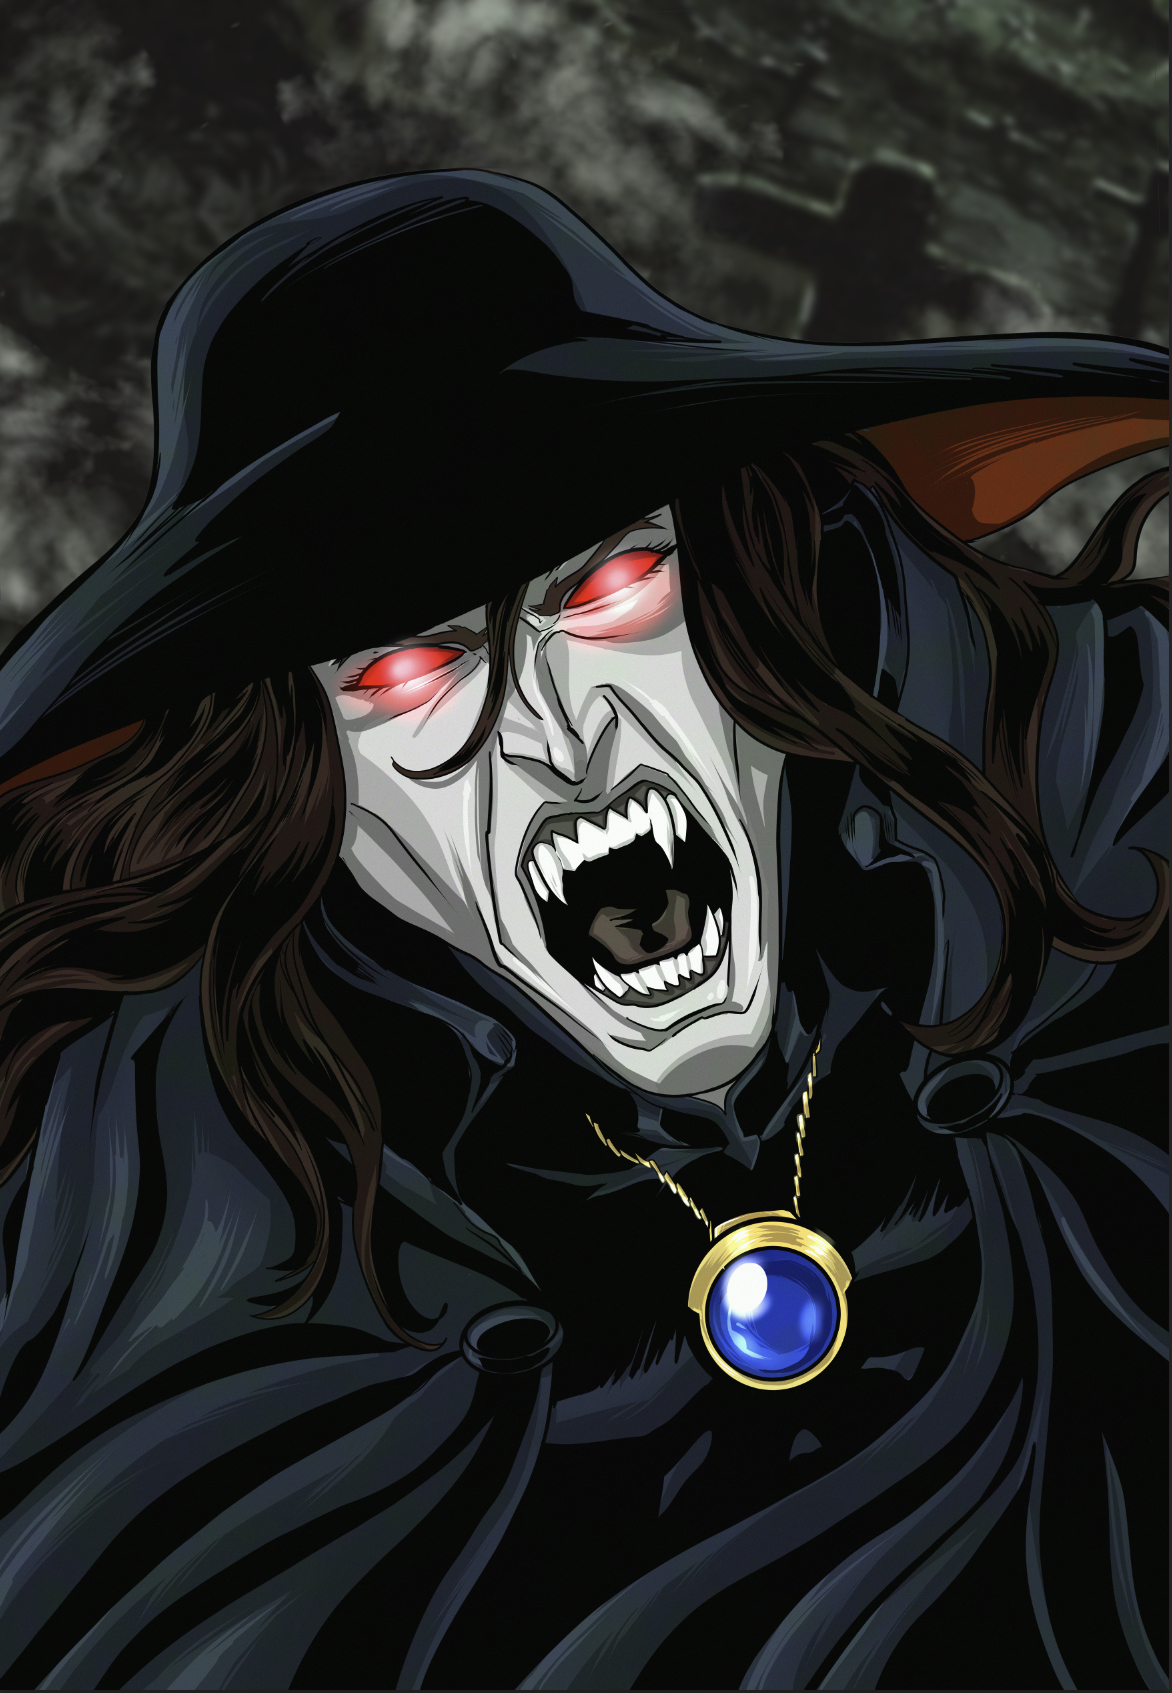 Vampire Hunter D! by PaulCameronART on DeviantArt